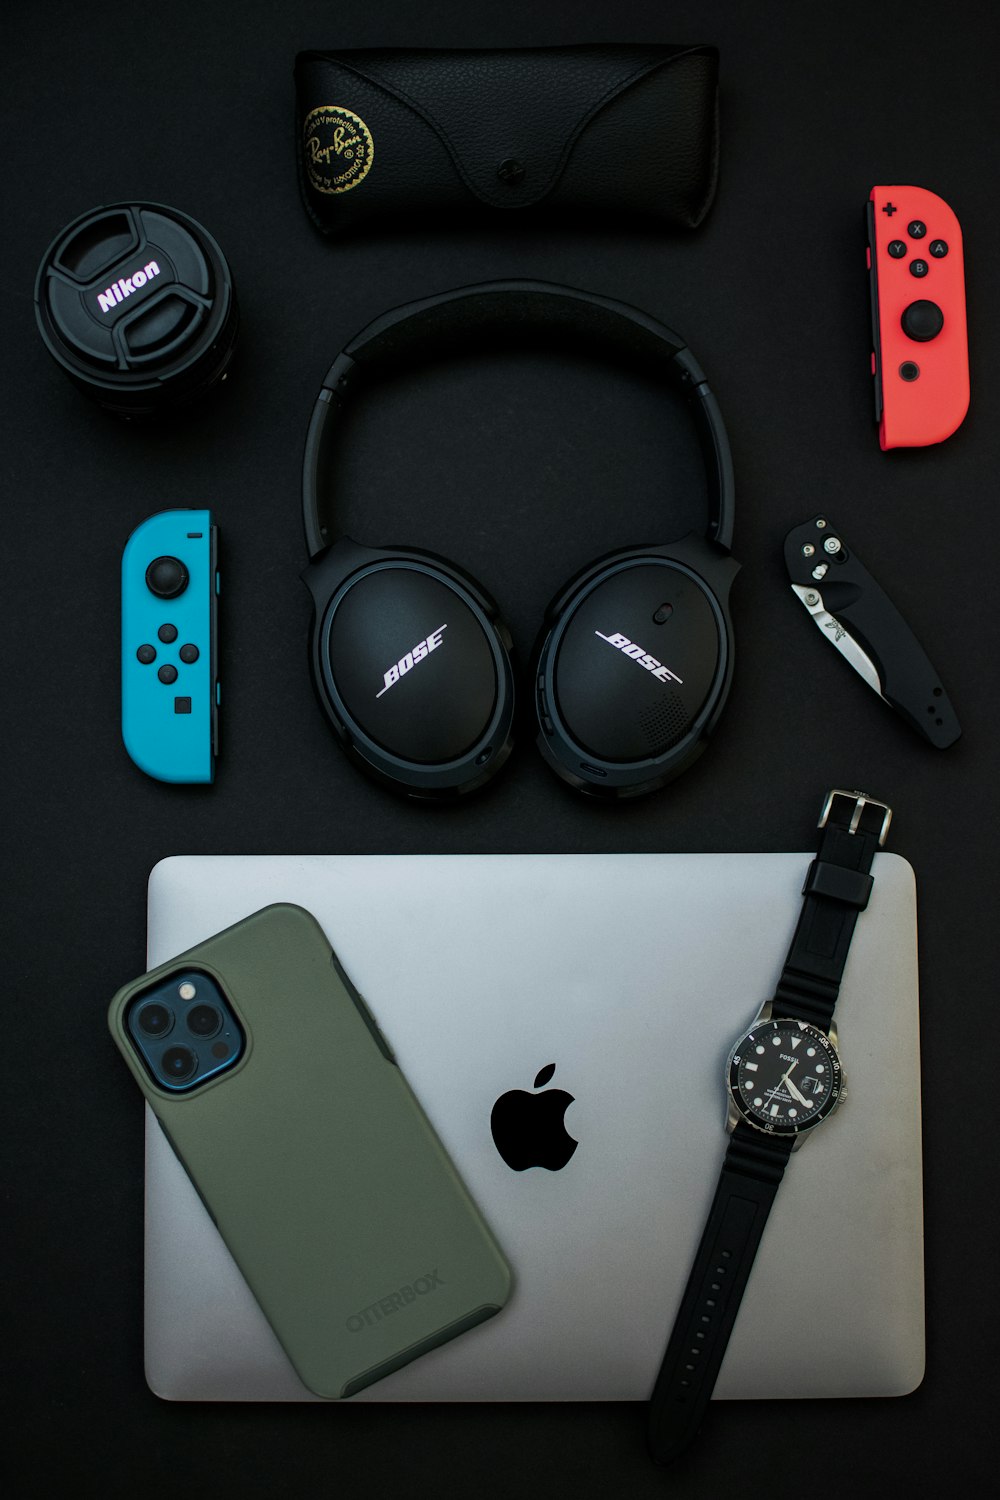 Auriculares Sony negros junto al iPhone 6 plateado y el reloj negro y plateado